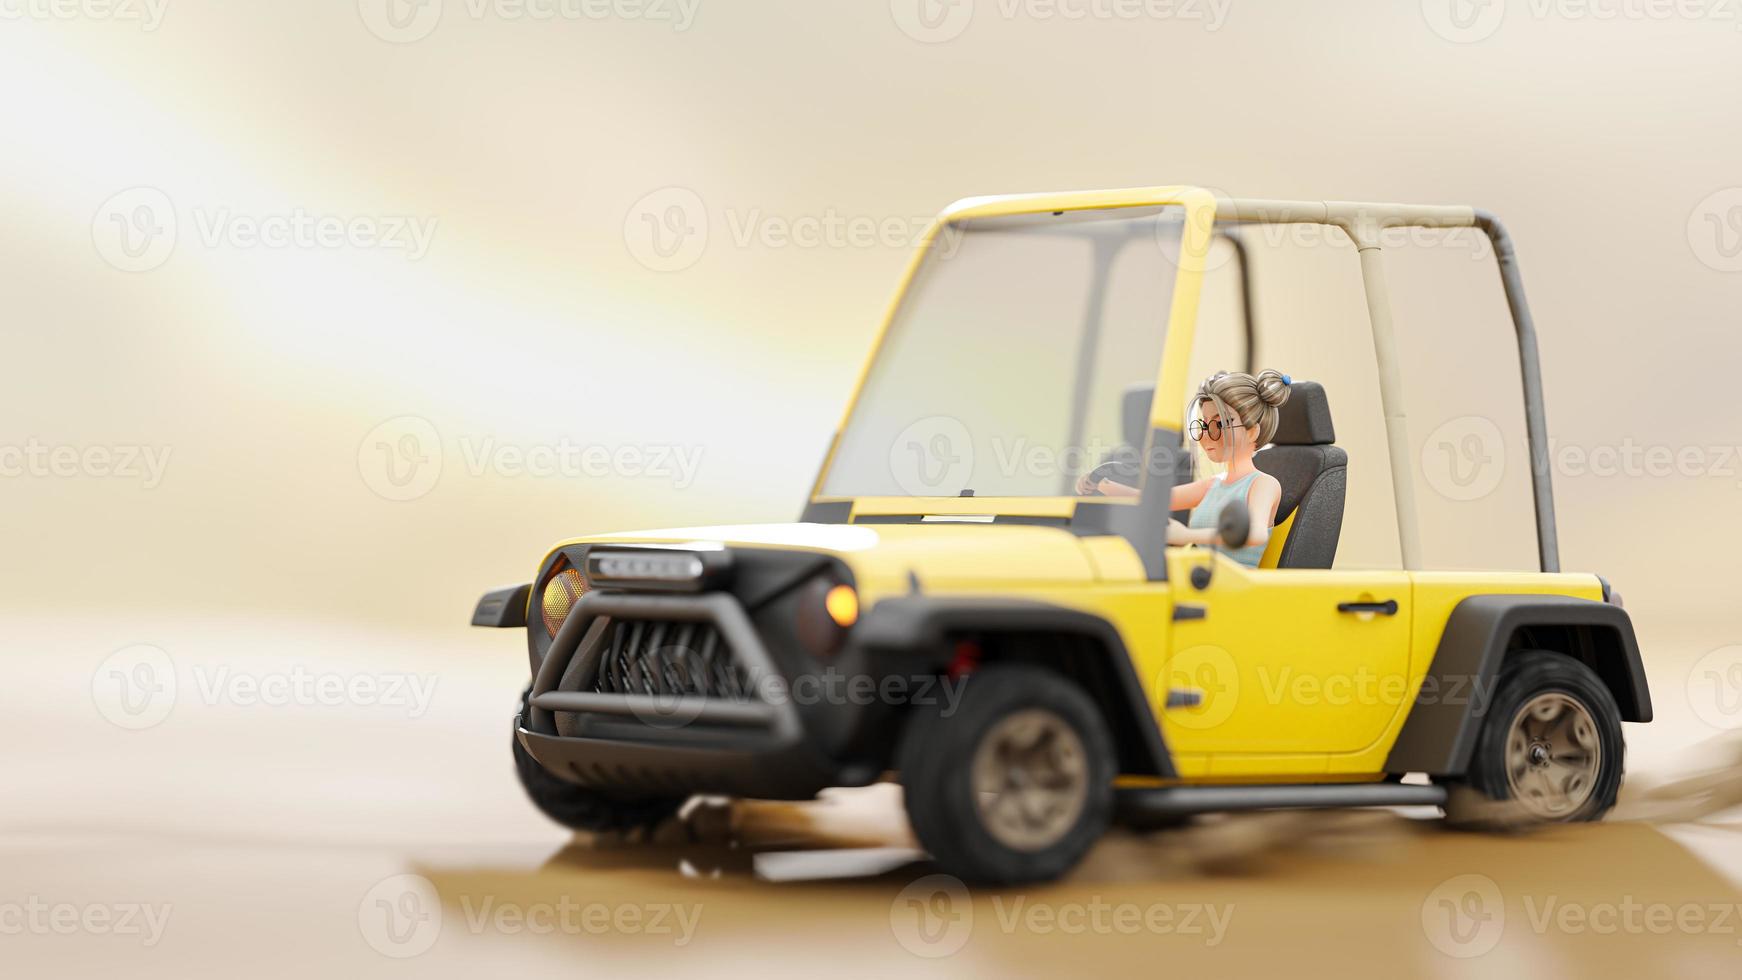 liten flicka som kör gul bil i tomma utrymmen ökenliknande. starkt ljus från solens bakgrund. tecknad serie. foto